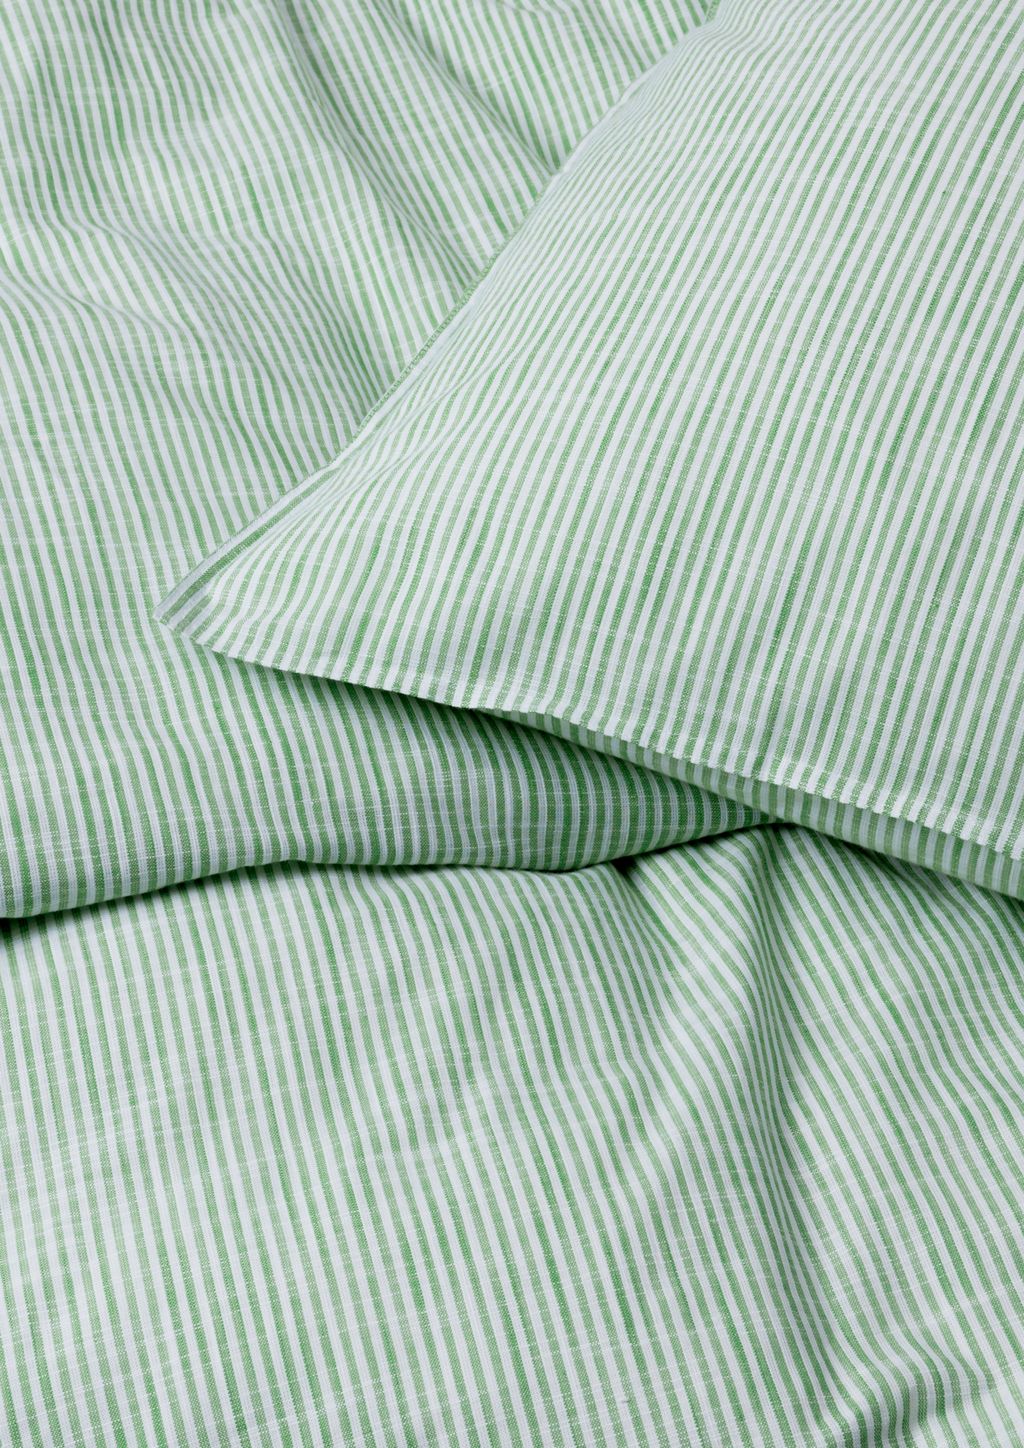 JUNA Monochrome Line Lines Lož ložnice 140 x220 cm, zelená/bílá